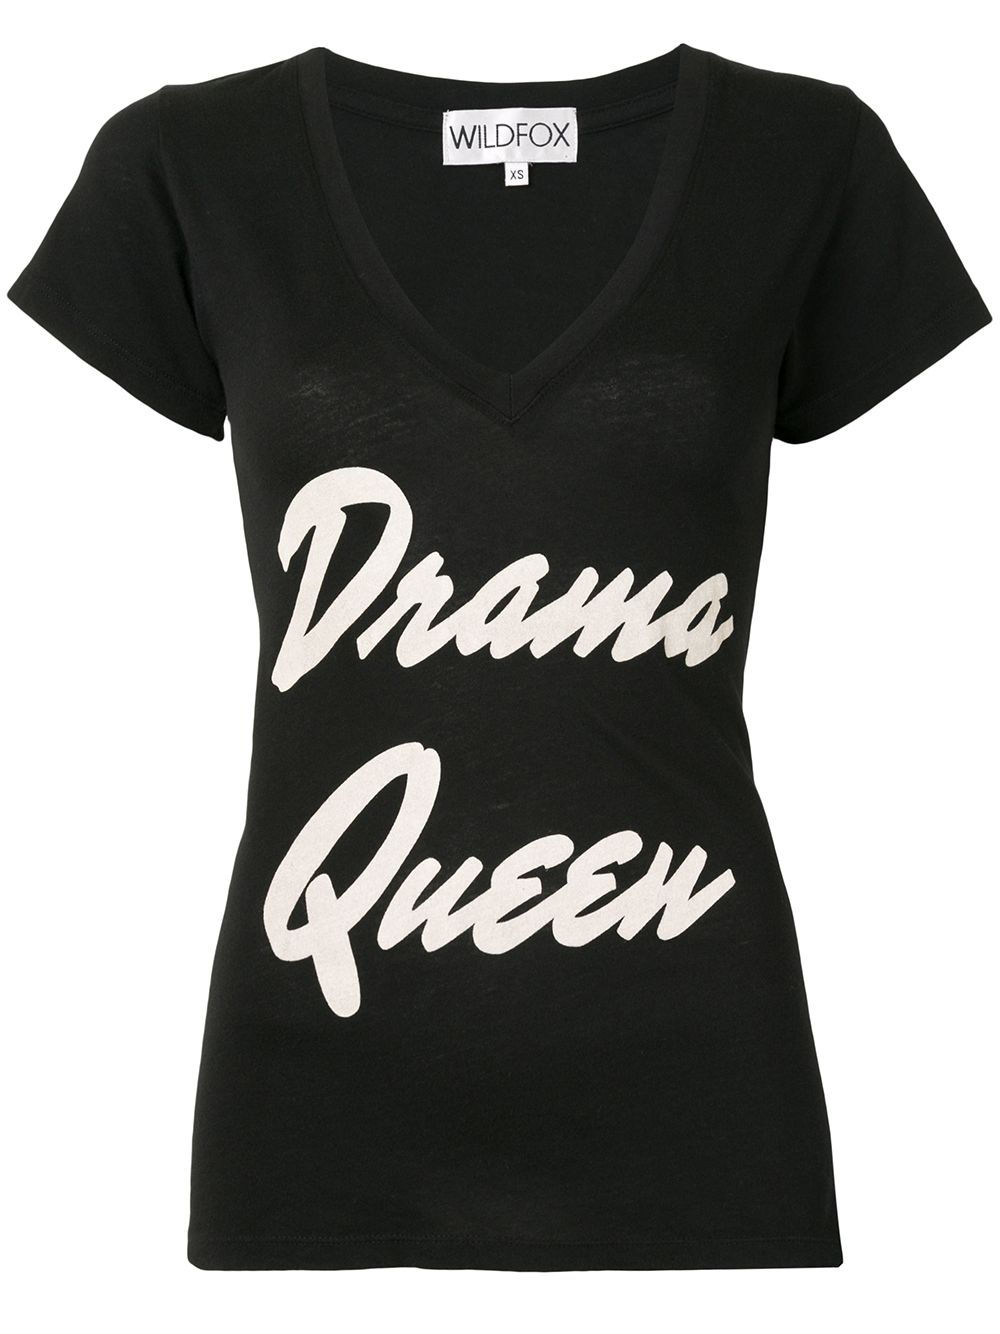 фото Wildfox футболка с надписью drama queen